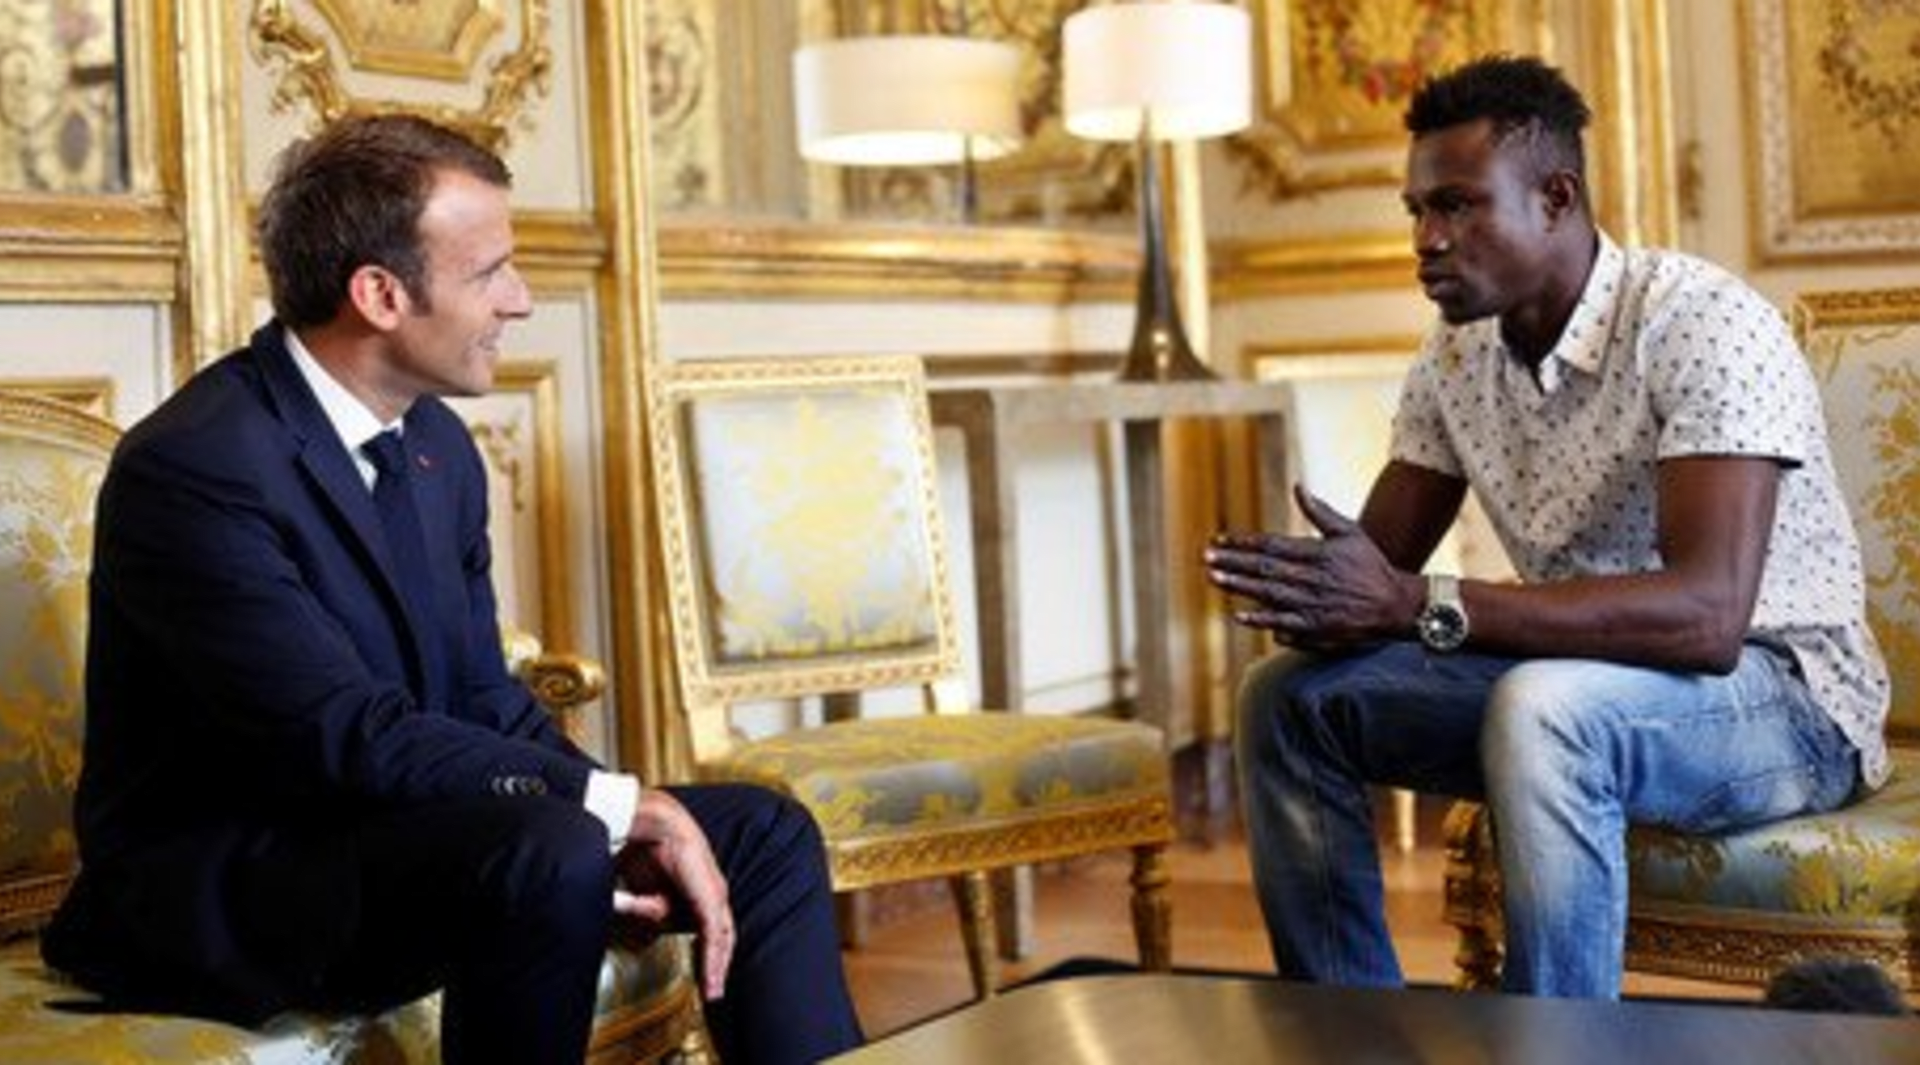 Pařížský hrdina: Malijský migrant zachránil dítě visící z balkónu. Za svou odvahu získal francouzské občanství